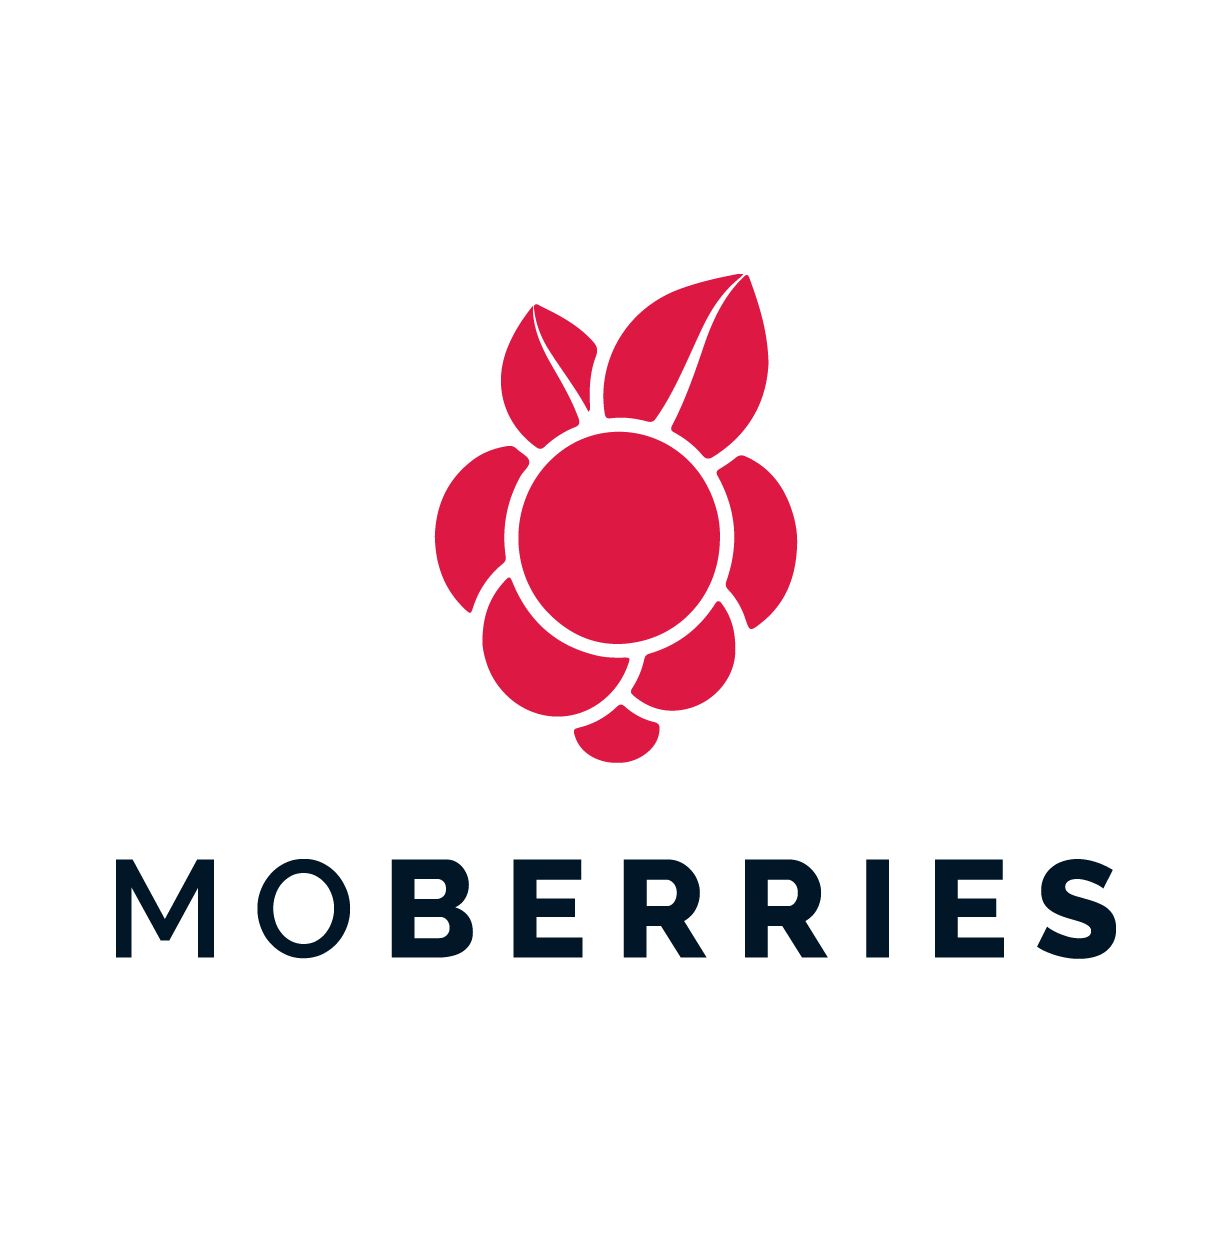 Team MoBerries